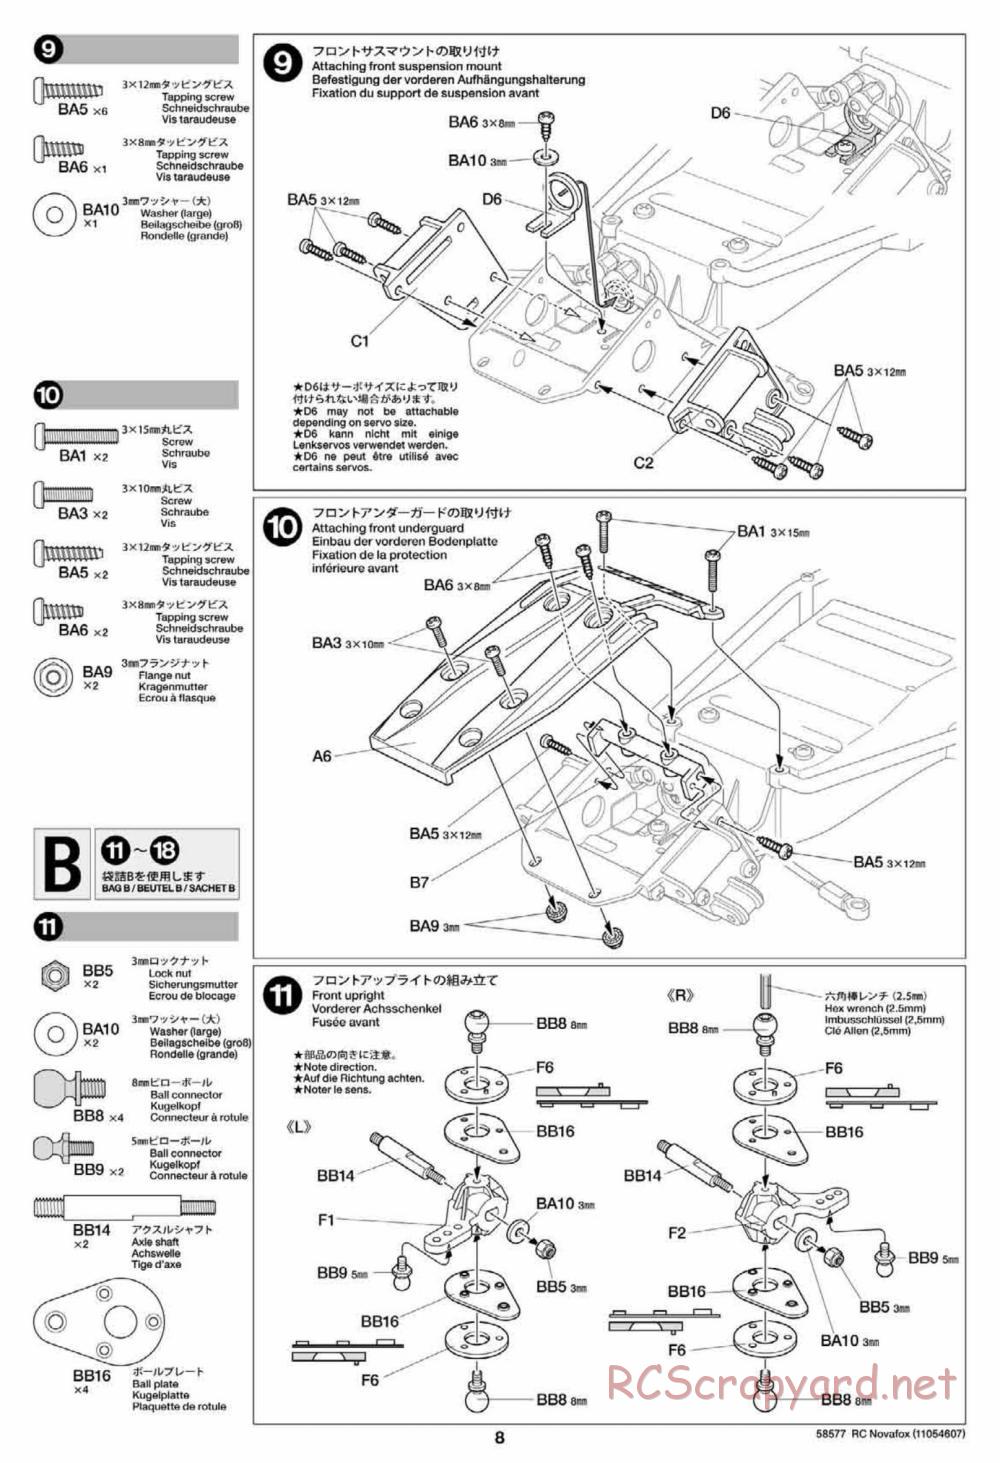 Tamiya - Novafox Chassis - Manual - Page 8